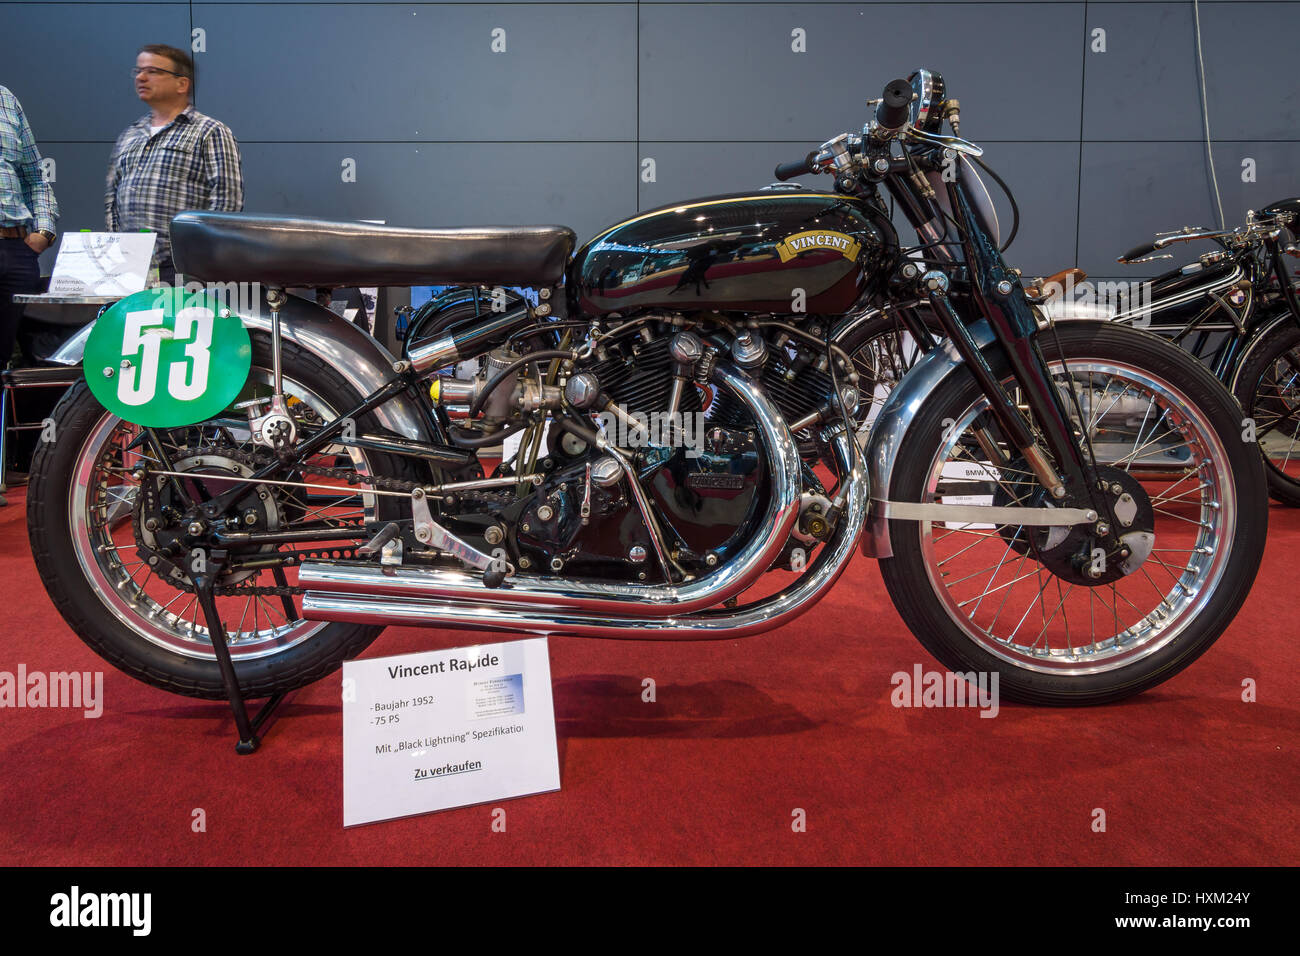 STUTTGART, Germania - 02 Marzo 2017: moto sportive Vincent rapide con 'lampo nero' specifica, 1952. In Europa il più grande classico auto exhibi Foto Stock